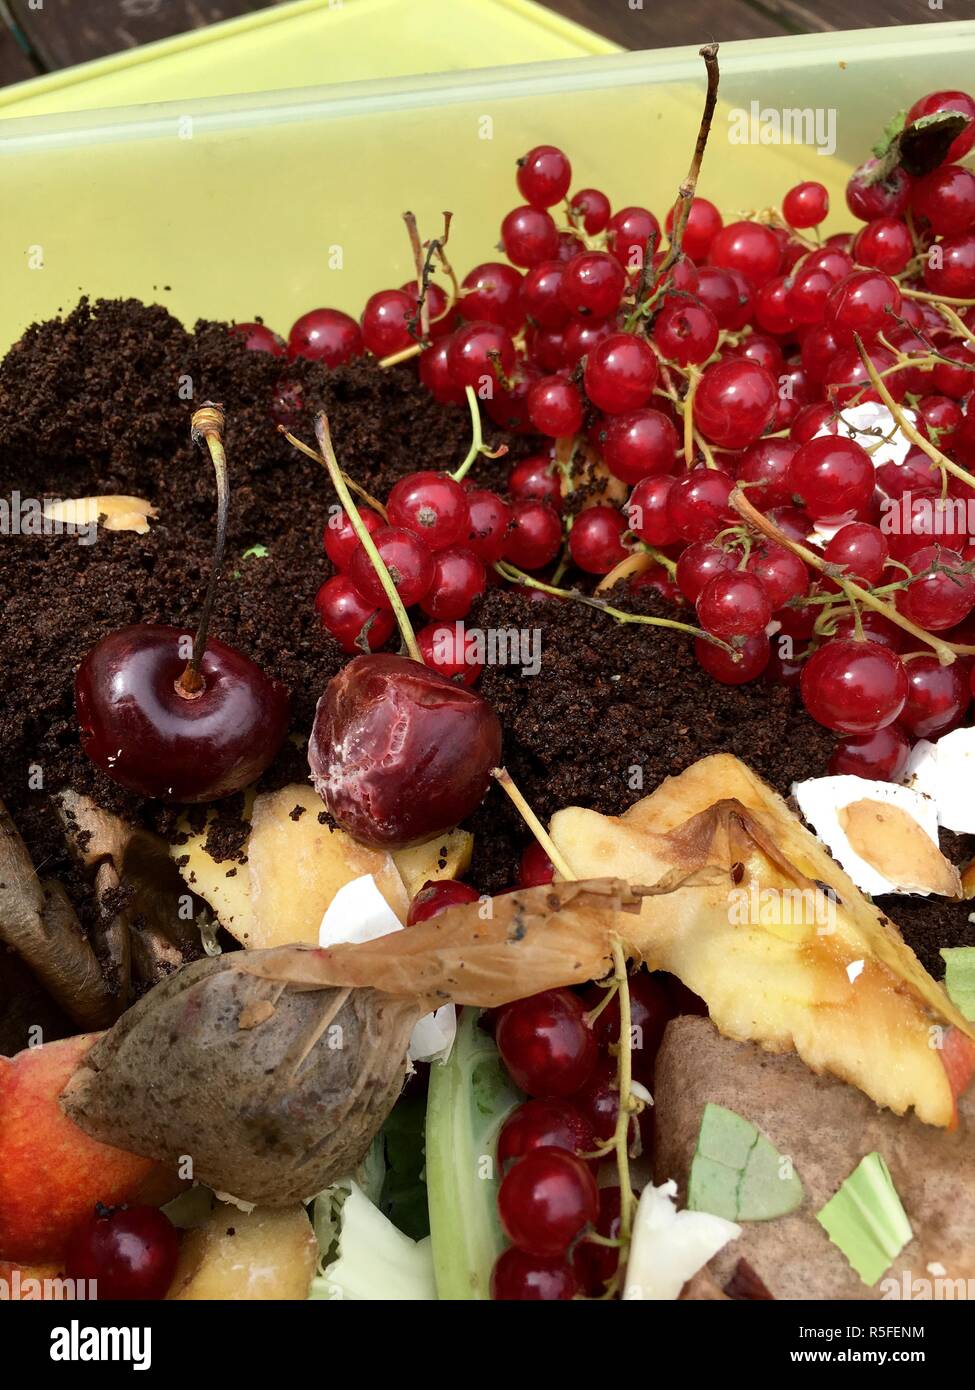 Fresco di rifiuti organici con uve secche di Corinto in un contenitore in plastica Foto Stock